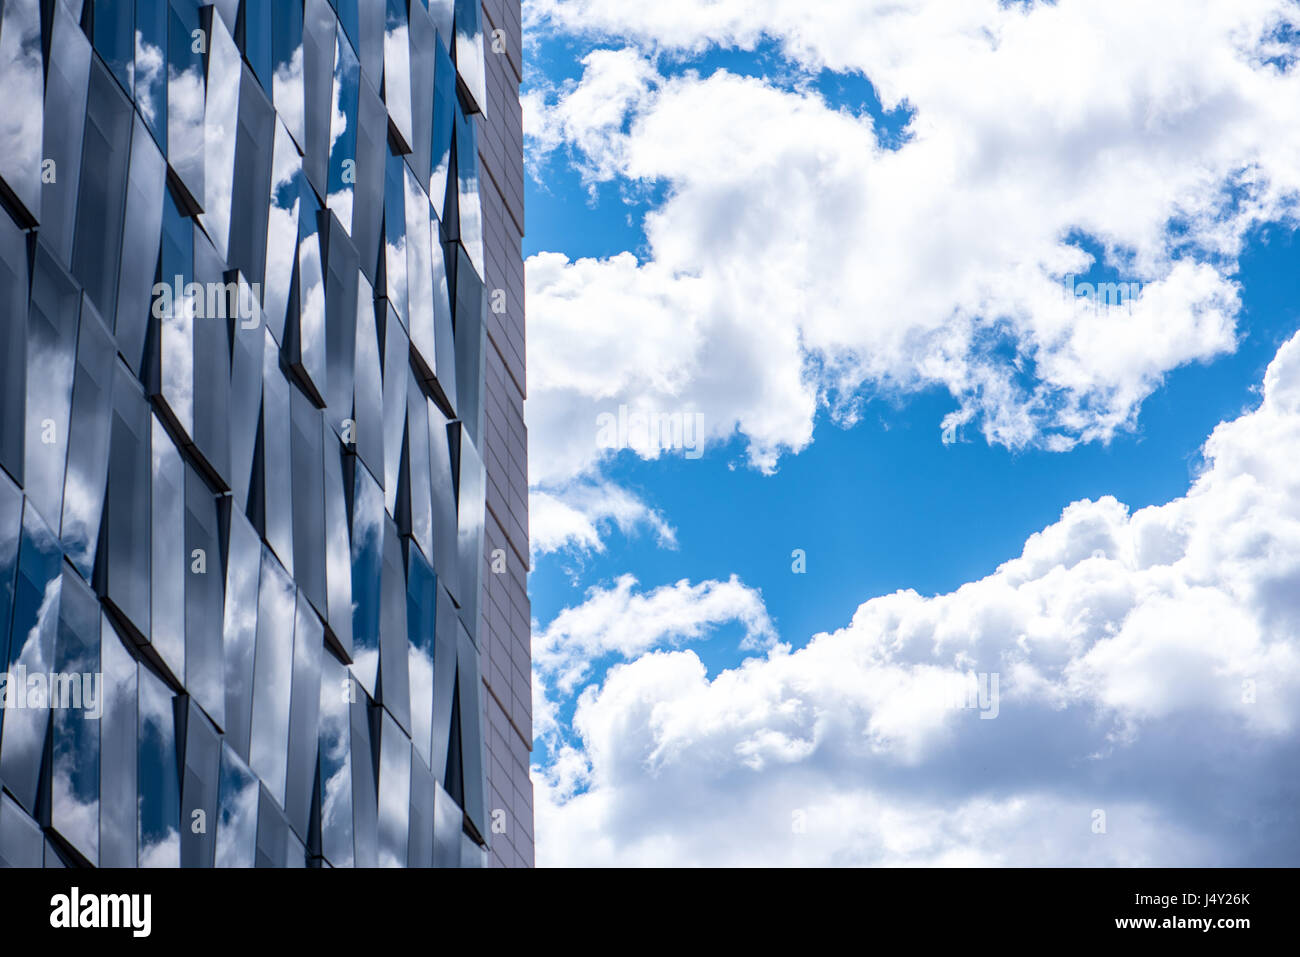 Reflexiones de cielo nublado en un futurista edificio moderno con fachada de cristal para fines terciarios, rascacielos en un distrito financiero, detalles Foto de stock